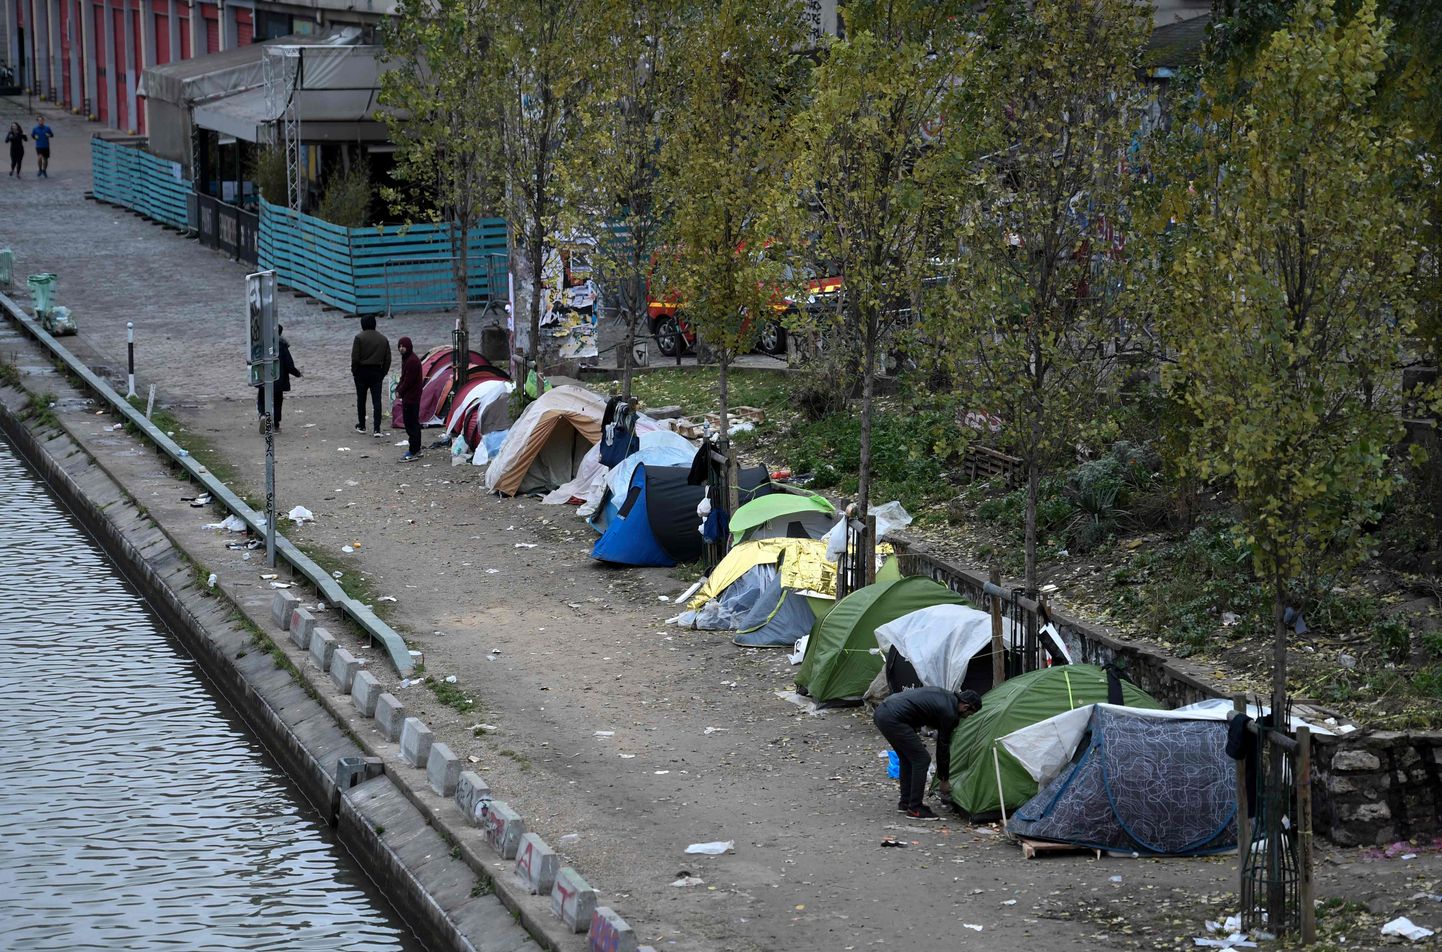 Meestegrupp seismas põgenike telkide kõrval Pariisis Saint-Martini kanali kallastel.